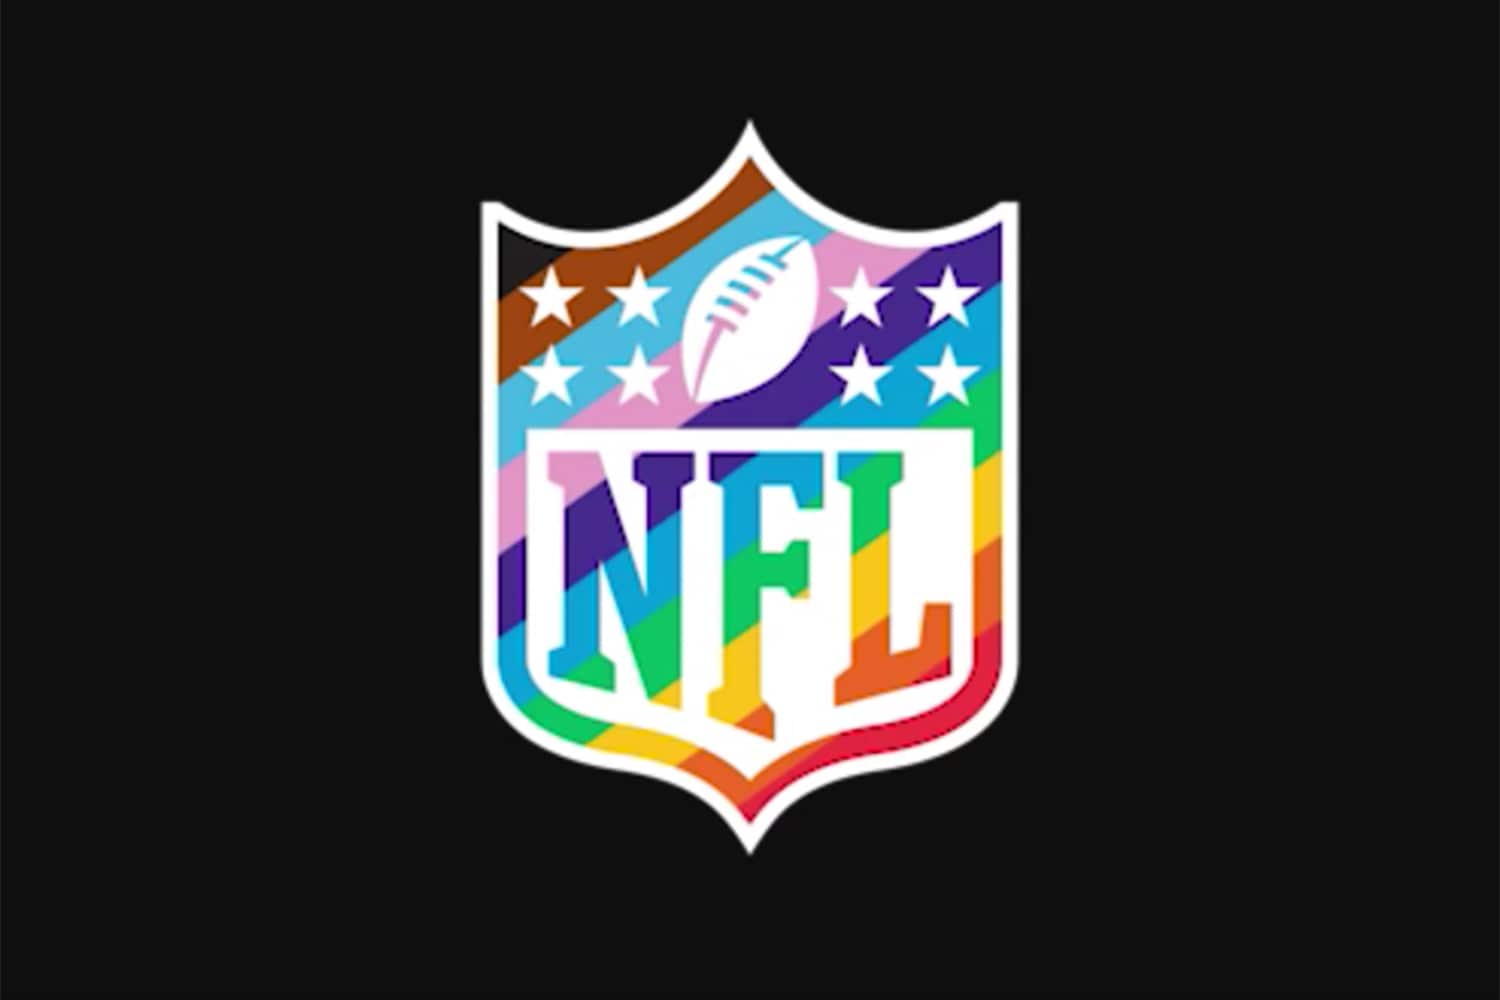 rainbow NFL logohttps://www.youtube.com/watch?v=o8pqjBYABXkCredit: NFL